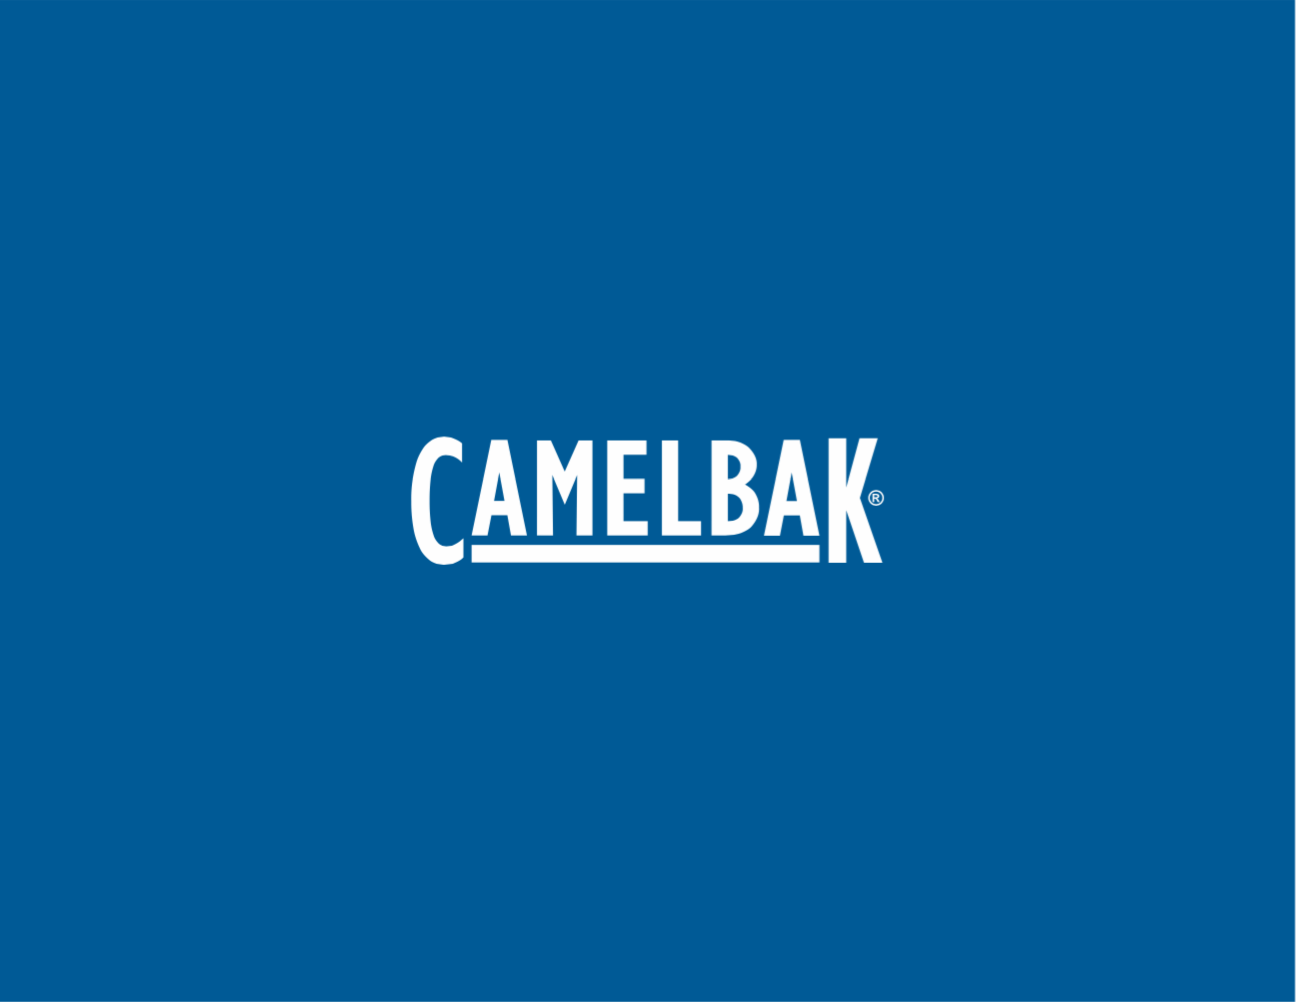 CamelBak Logo - Camelbak logo